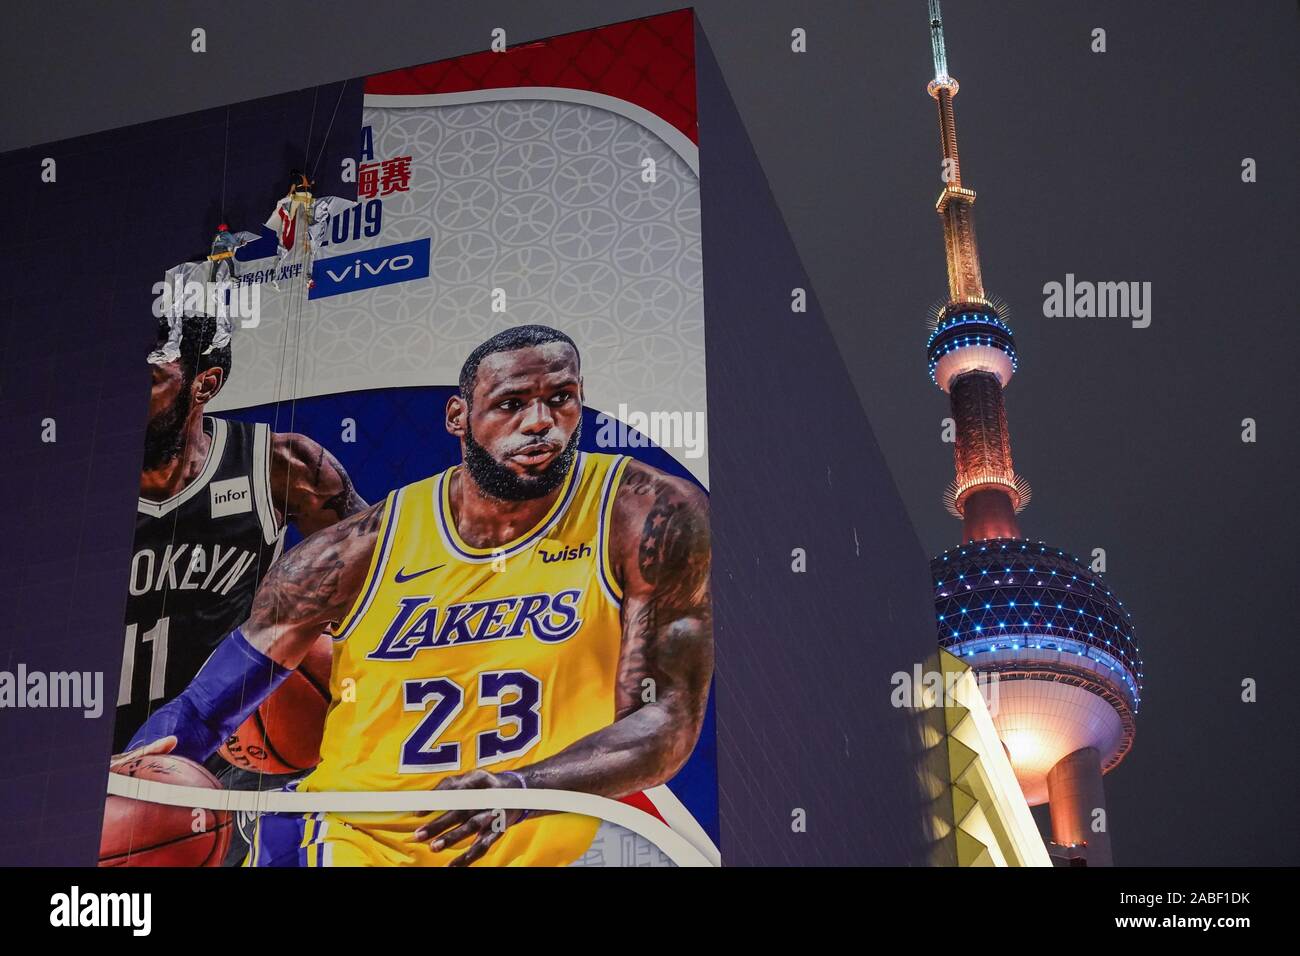 Les travailleurs de la construction dismentle une gigantesque affiche de la NBA NBA avant 2019 à Lujiazui Shanghai, Shanghai, Chine, le 9 octobre 2019. Banque D'Images